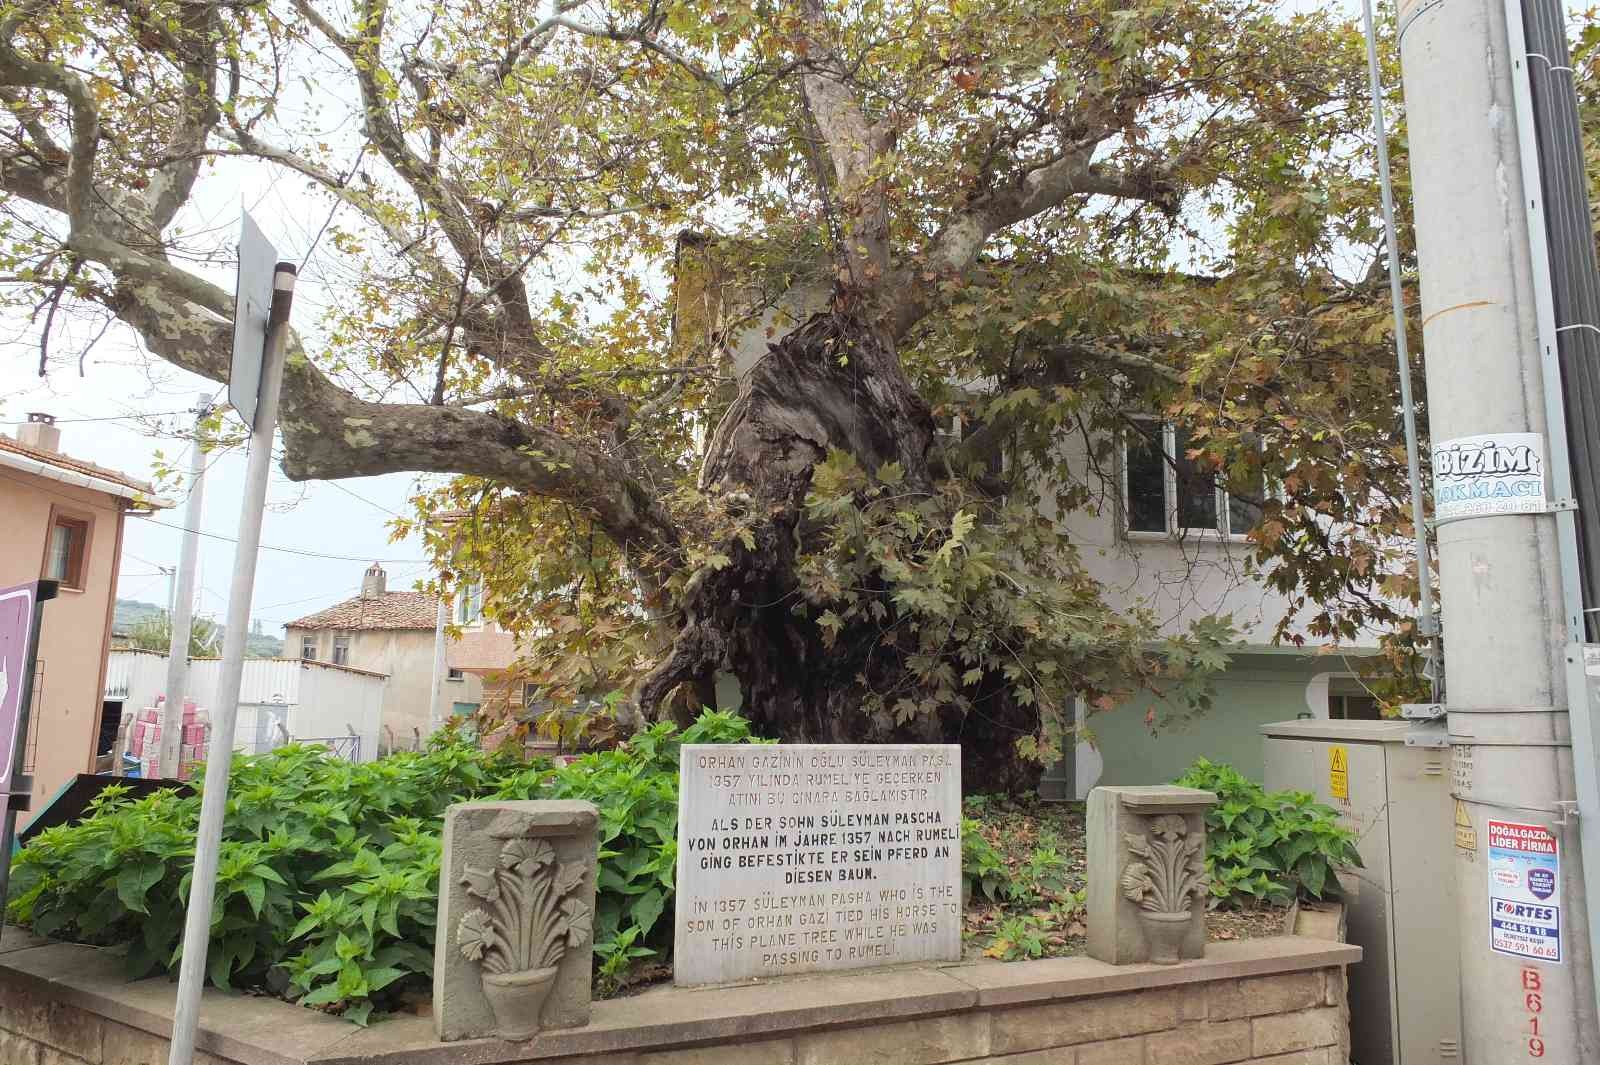 Süleyman Paşa’nın 7 asır önce atını bağladığı anıt ağaç kuruyor #balikesir